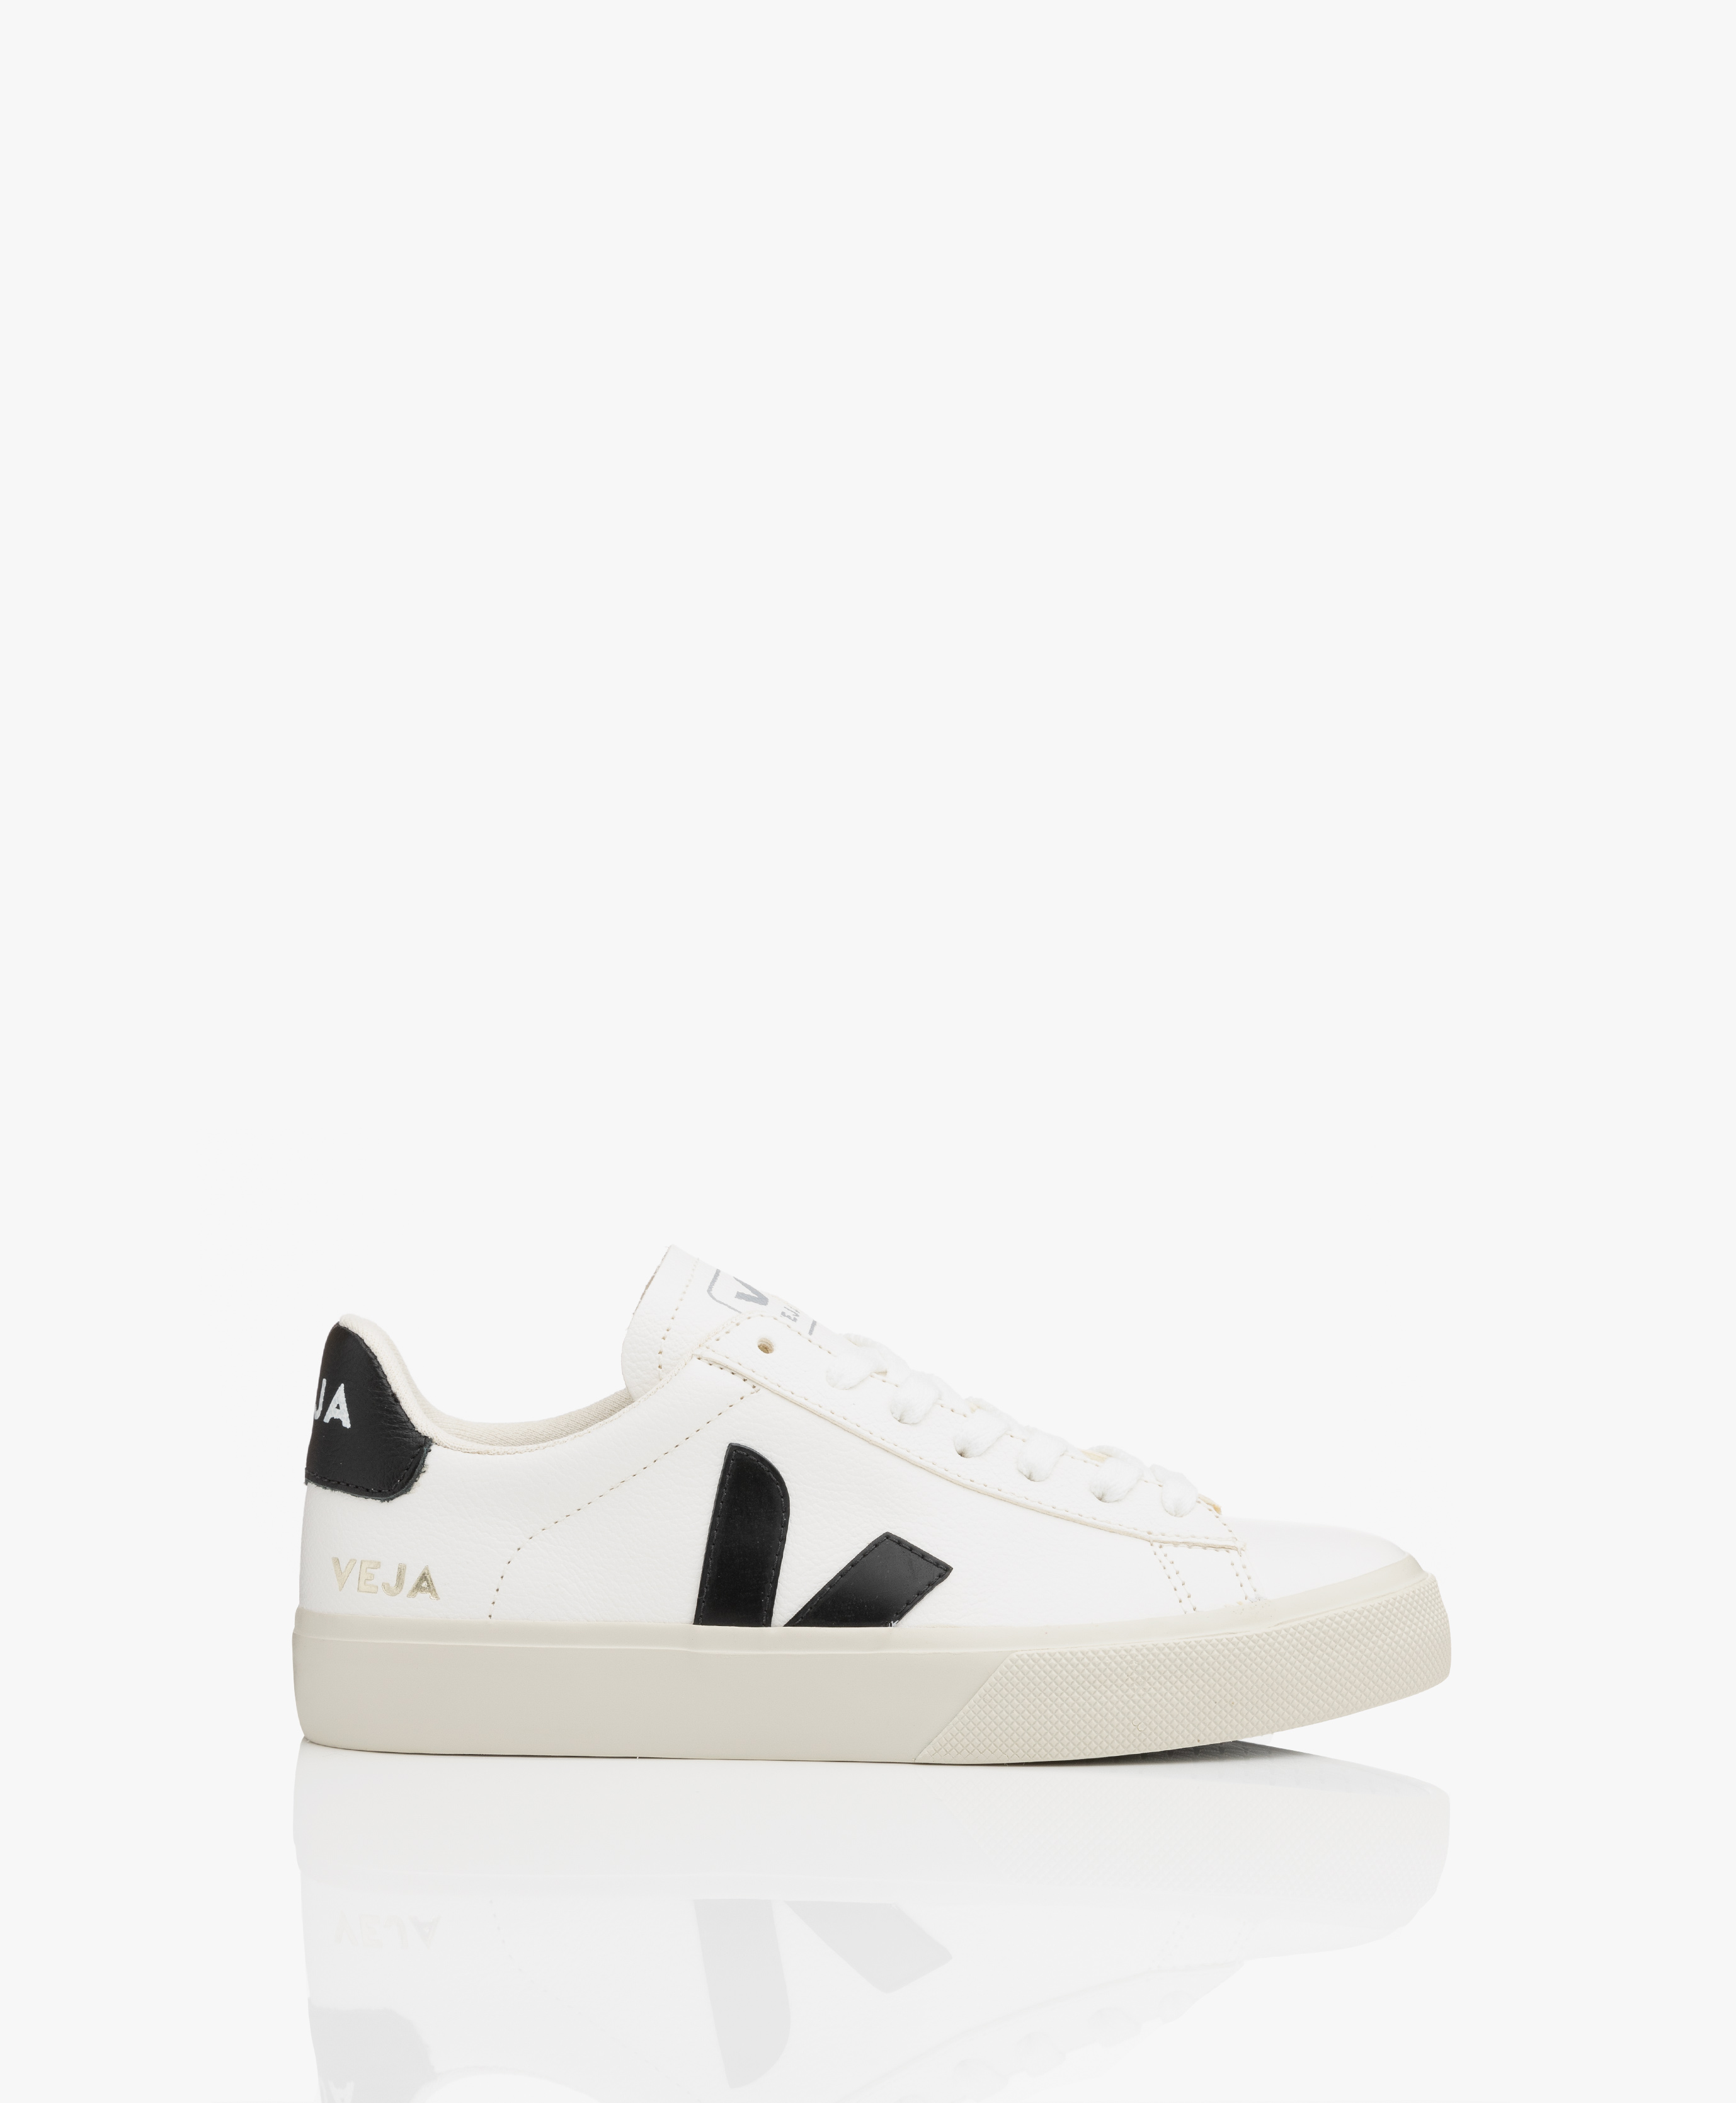 Buy > veja white black sneakers > in stock